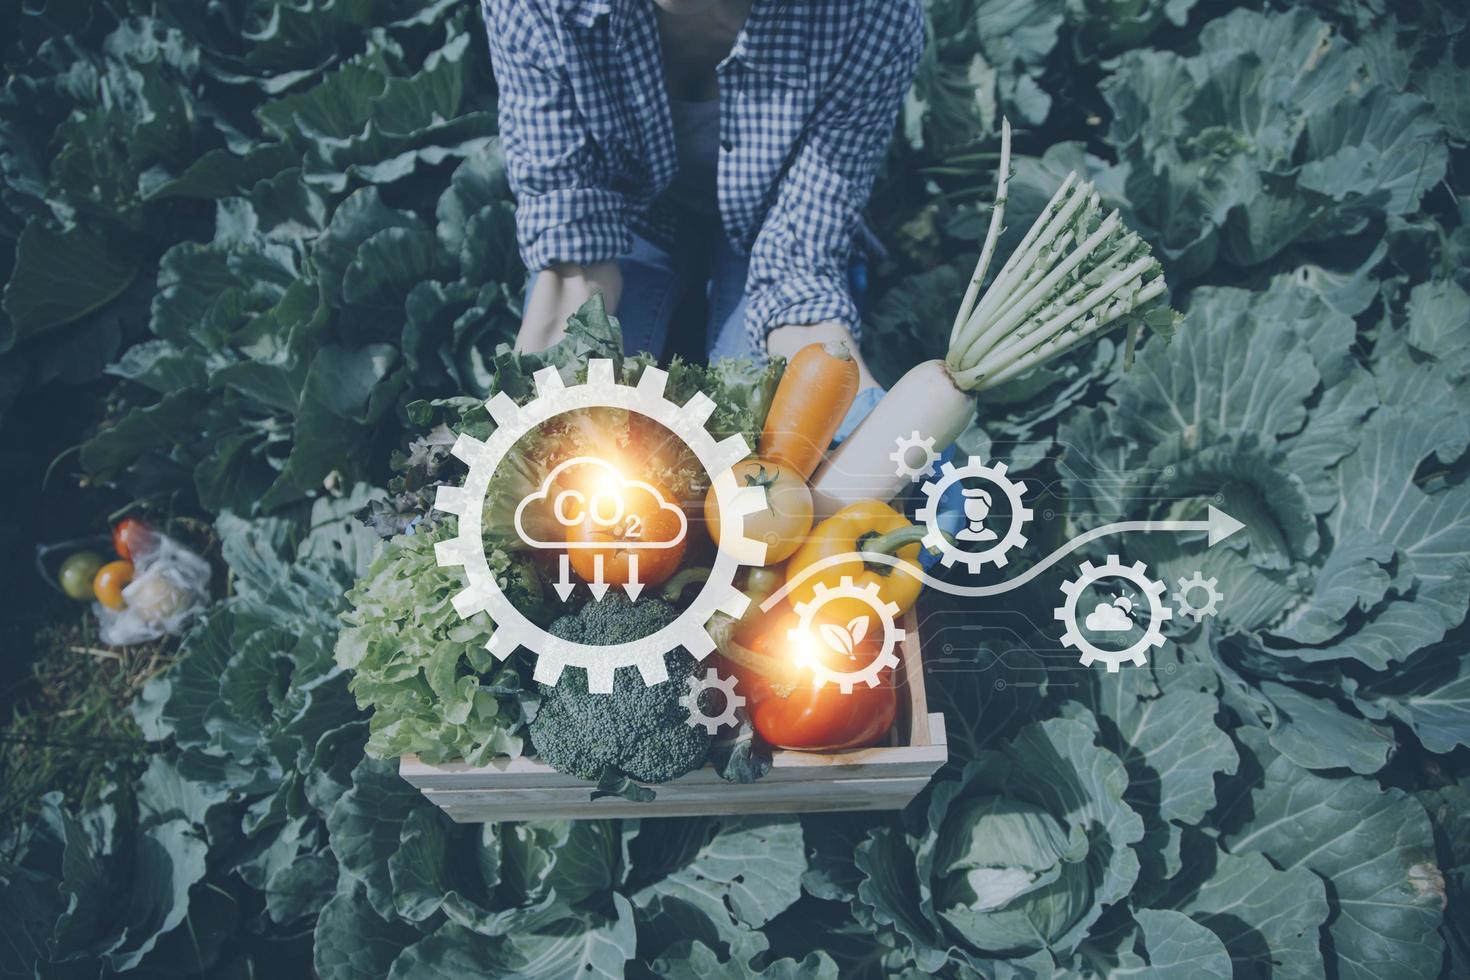 un hombre de negocios futurista cultiva verduras y cultivos usando tecnología moderna de inteligencia artificial usando teléfonos móviles, sensores de temperatura y humedad, rastreo de agua, control climático, íconos de datos holográficos. foto